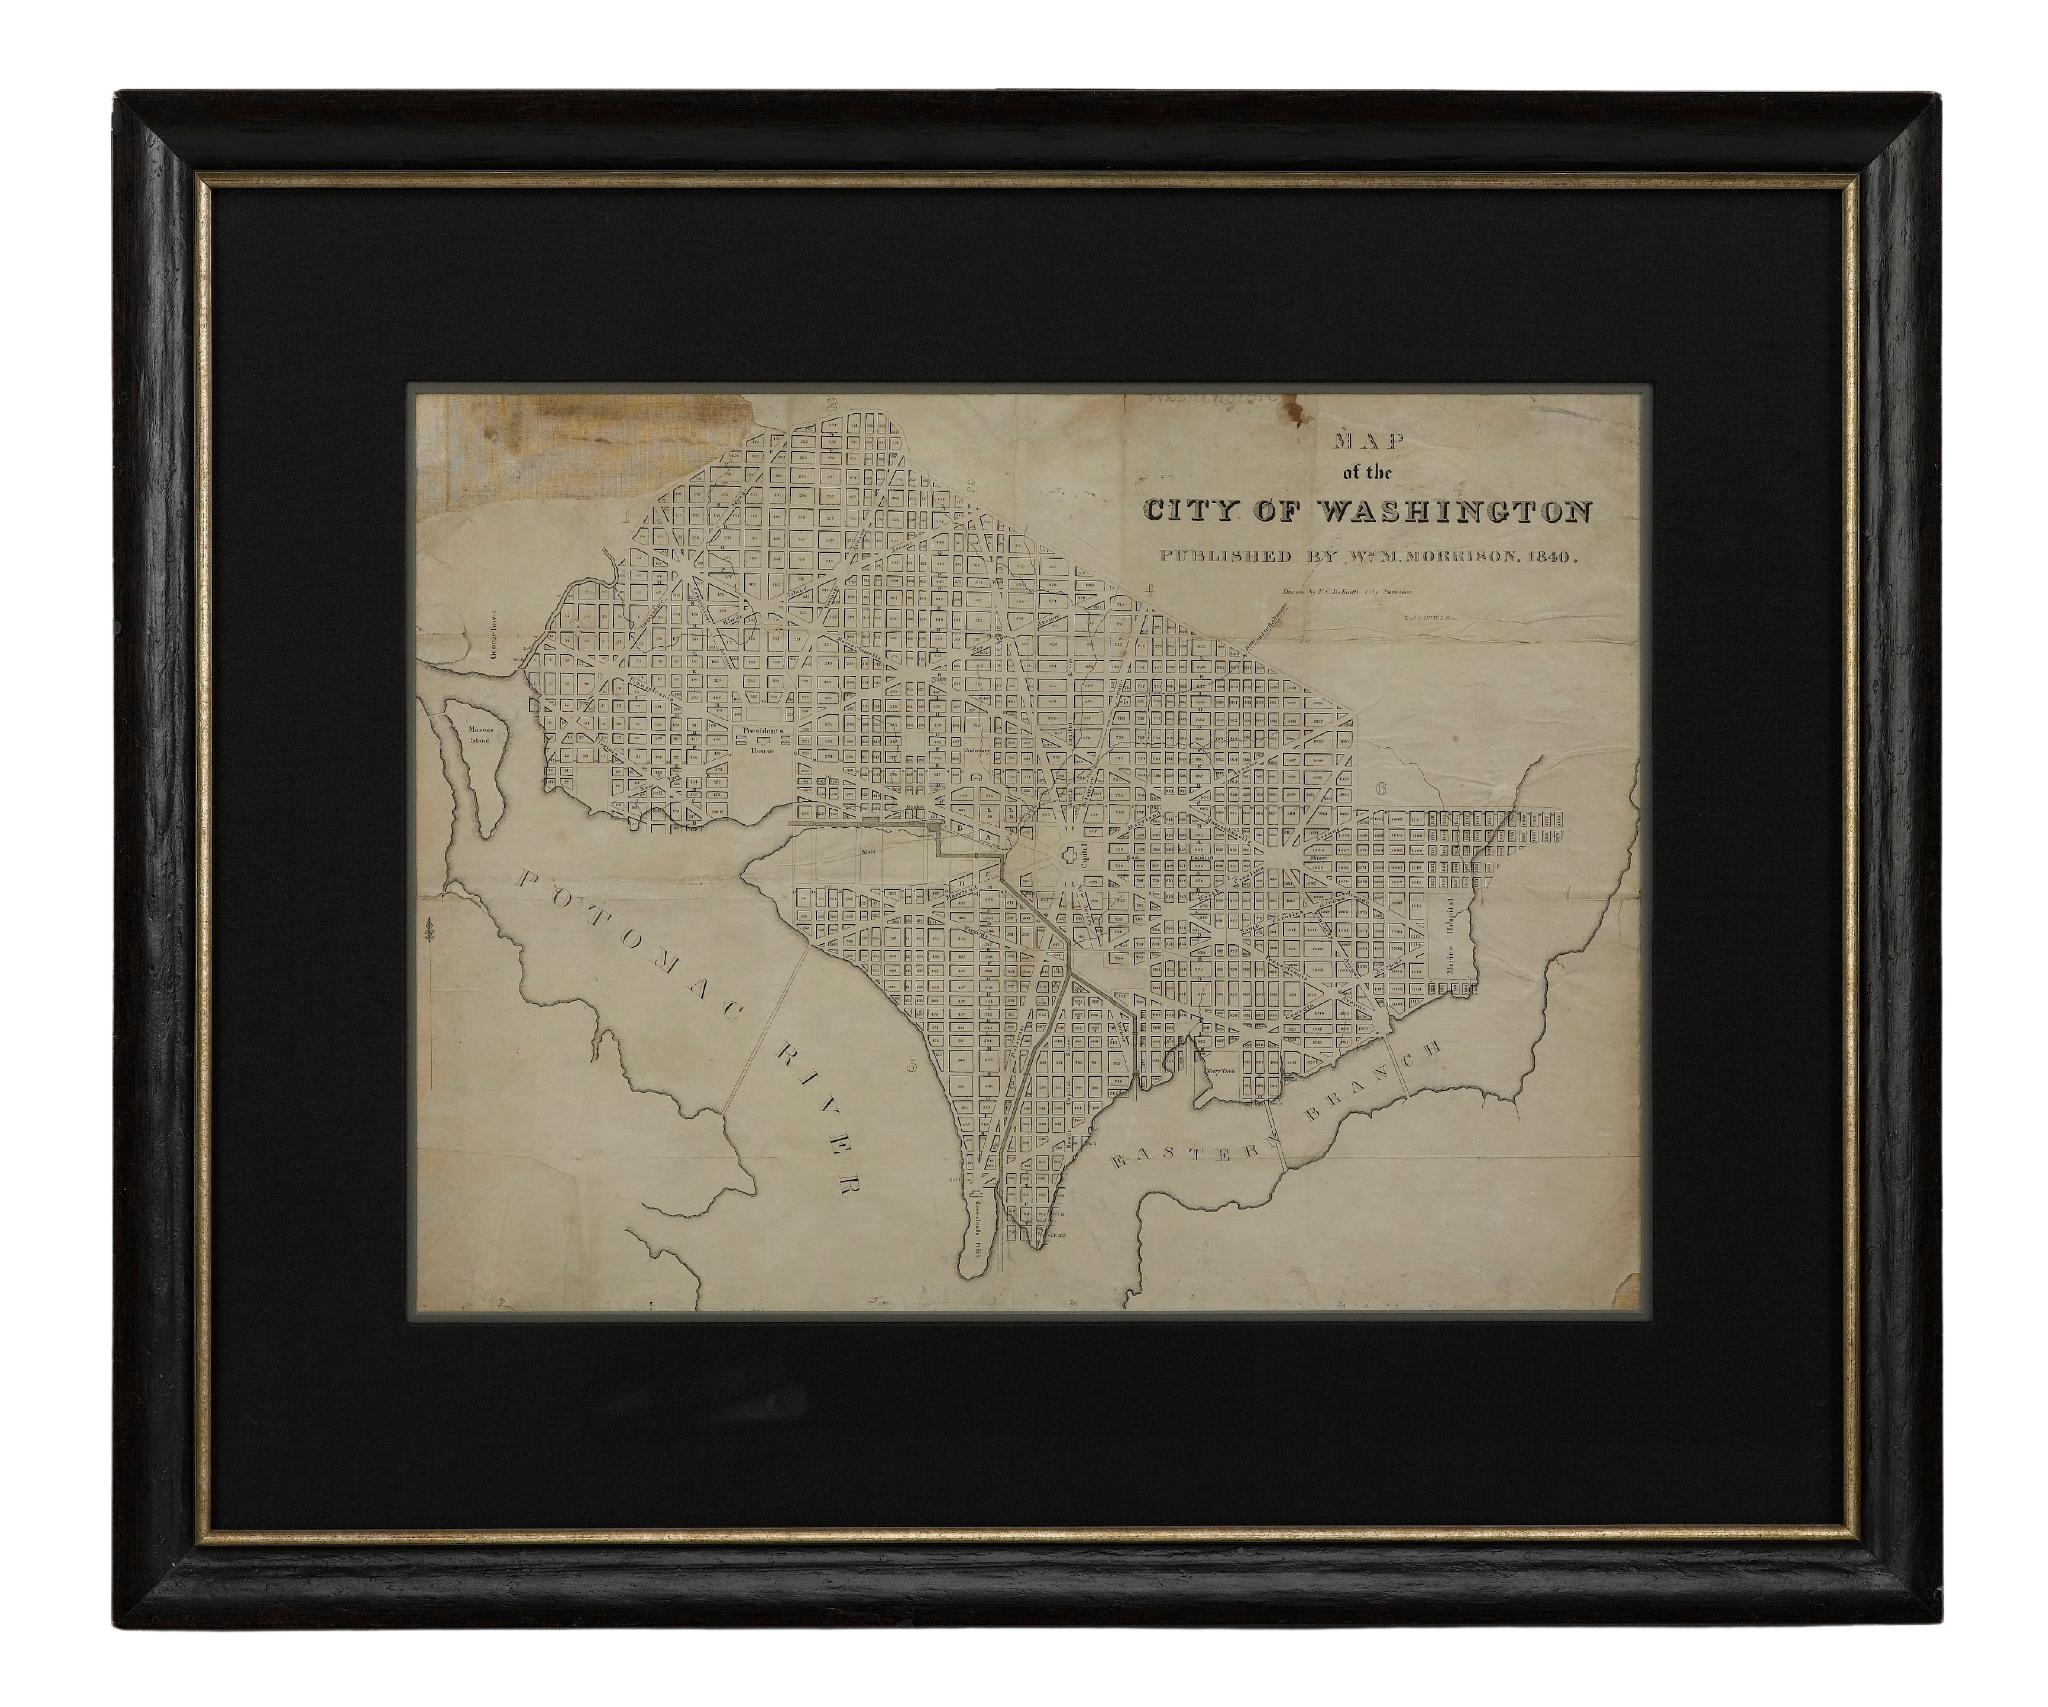 Diese 1840 gedruckte Karte ist eine detaillierte Darstellung von Washington, D.C. in der Mitte des 19. Jahrhunderts. Die Karte zeigt Blocknummern, Bezirke und Regierungsgebäude sowie Details der Stadt, die sich inzwischen verändert haben. Die Karte